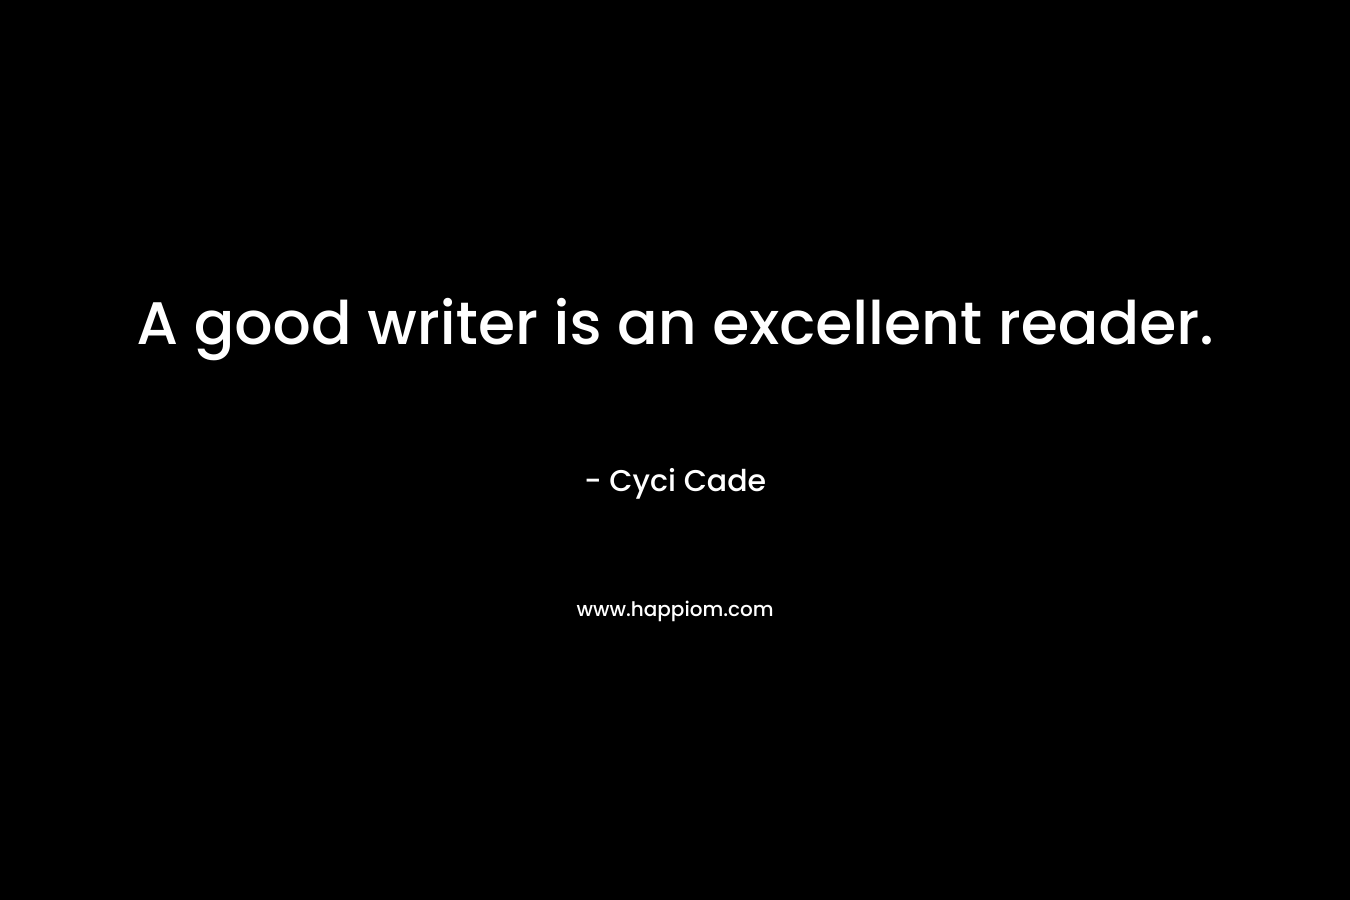 A good writer is an excellent reader.